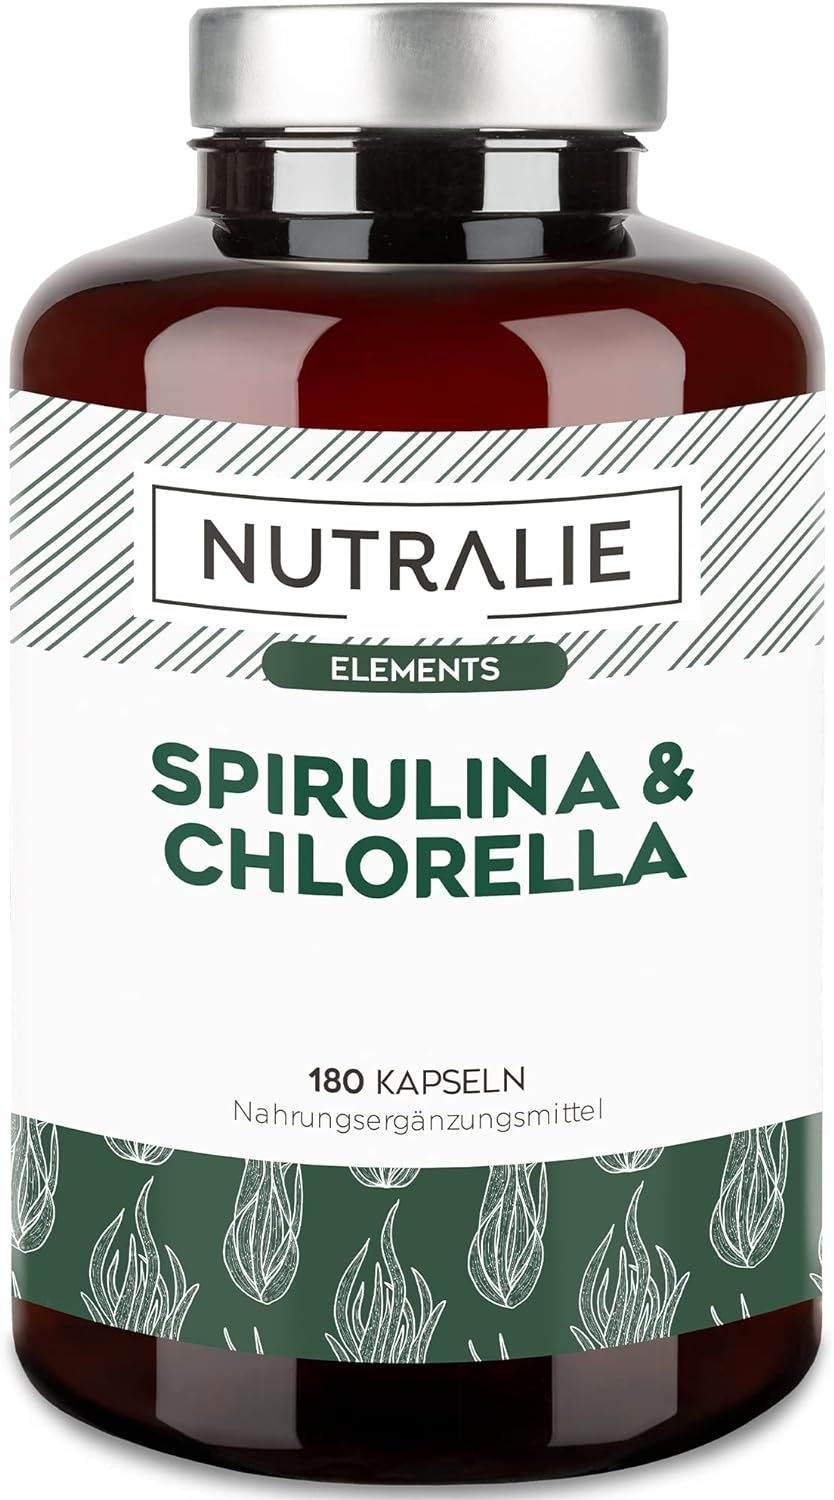 Nutralie Spirulina & Chlorella 180 St